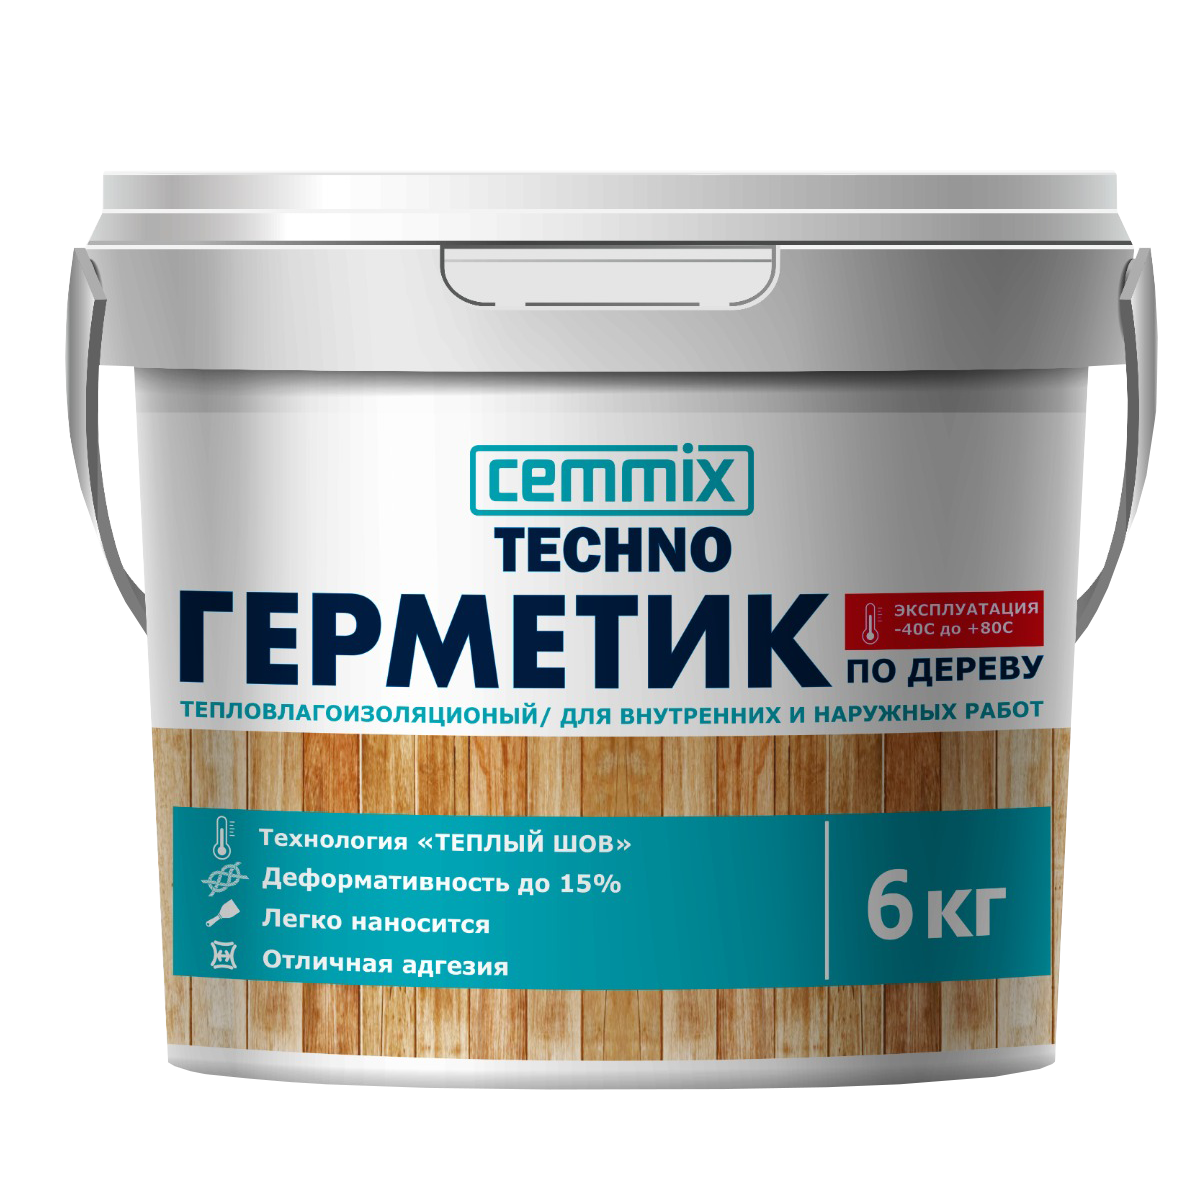 90602619 Герметик для Теплых швов акрил для деревянных поверхностей мед ведро 6 кг STLM-0301903 CEMMIX